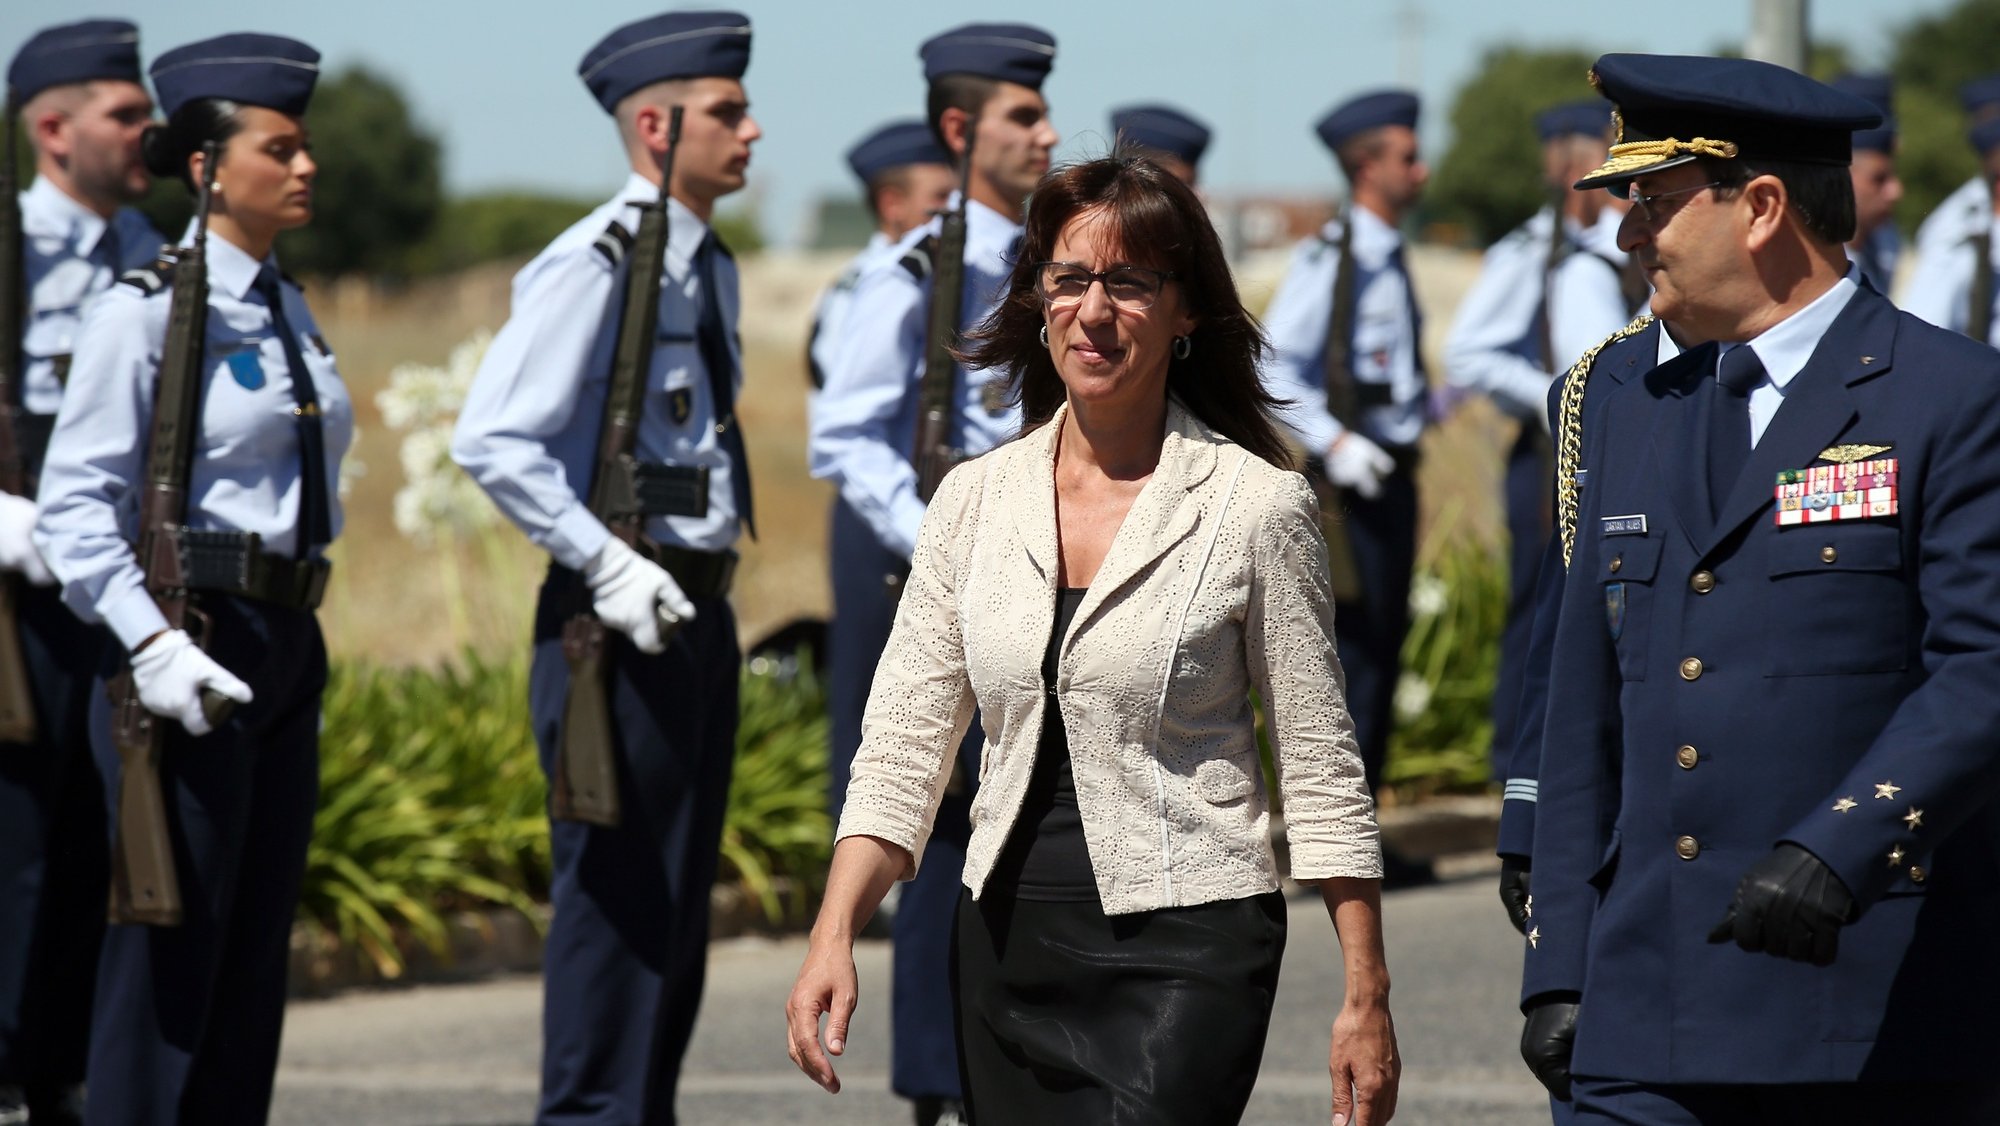 A ministra da Defesa Nacional, Helena Carreiras (C), passa revista às forças em parada, durante a cerimónia militar das celebrações do Dia da Força Aérea/70.º aniversário da Força Aérea, em Beja, 01 de julho de 2022. NUNO VEIGA/LUSA